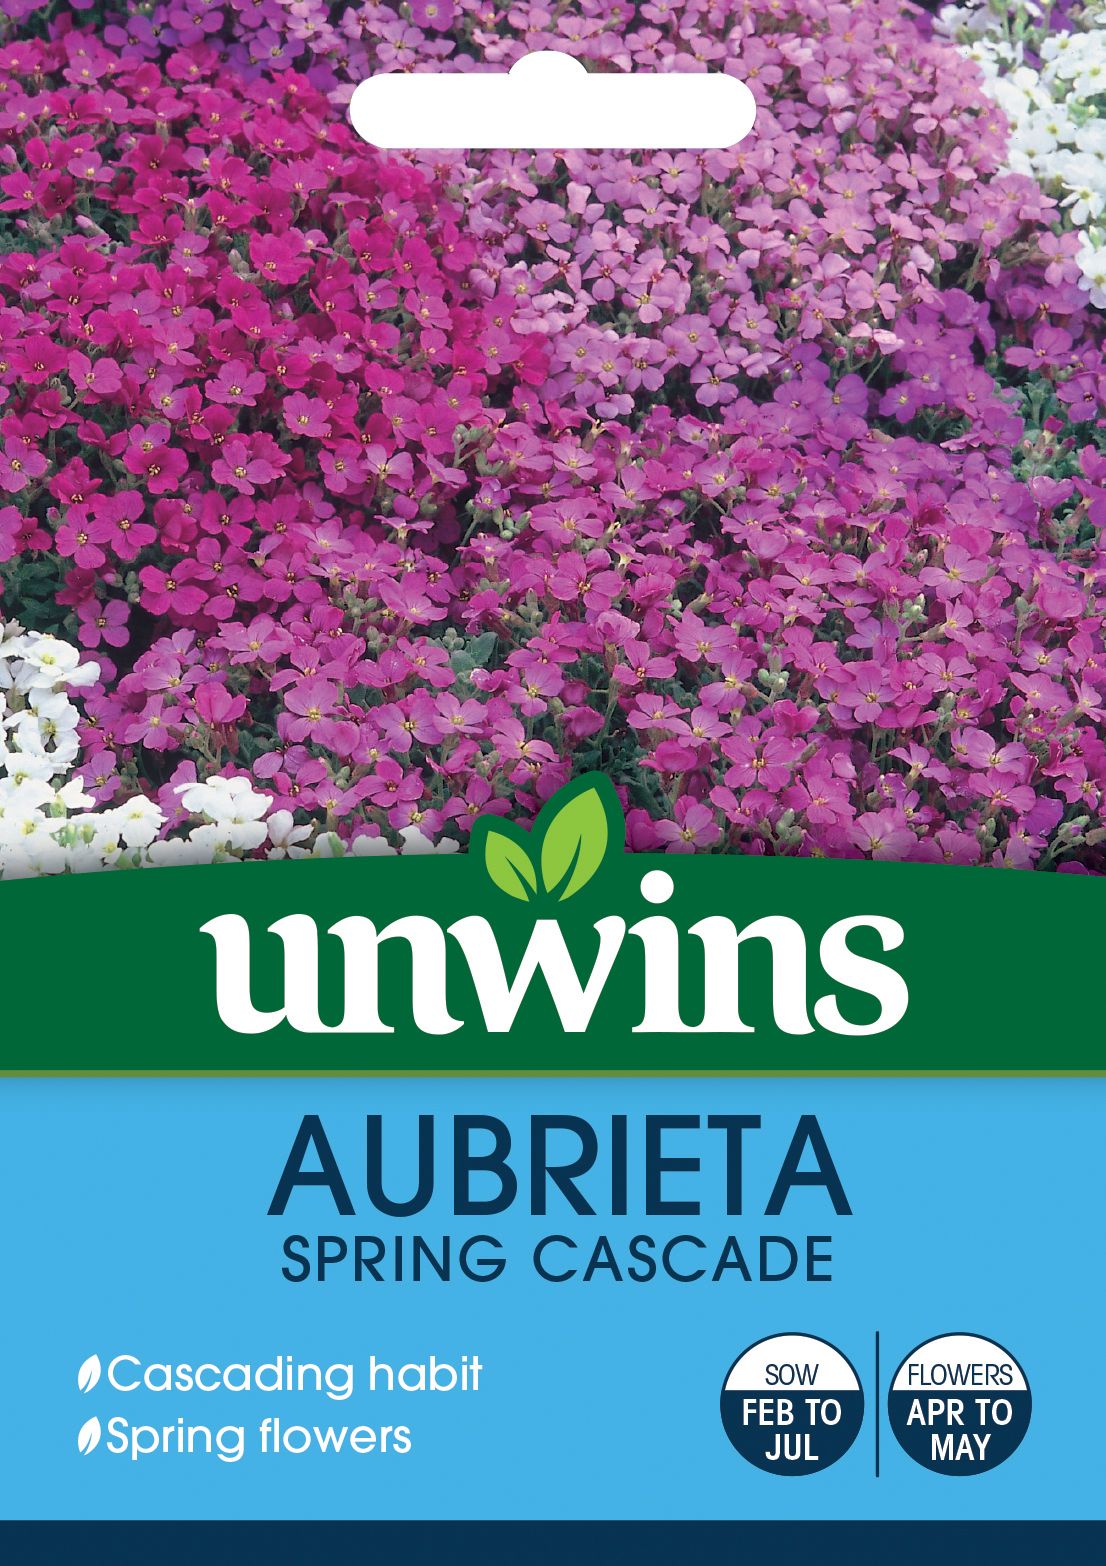 Aubrieta Spring Cascade